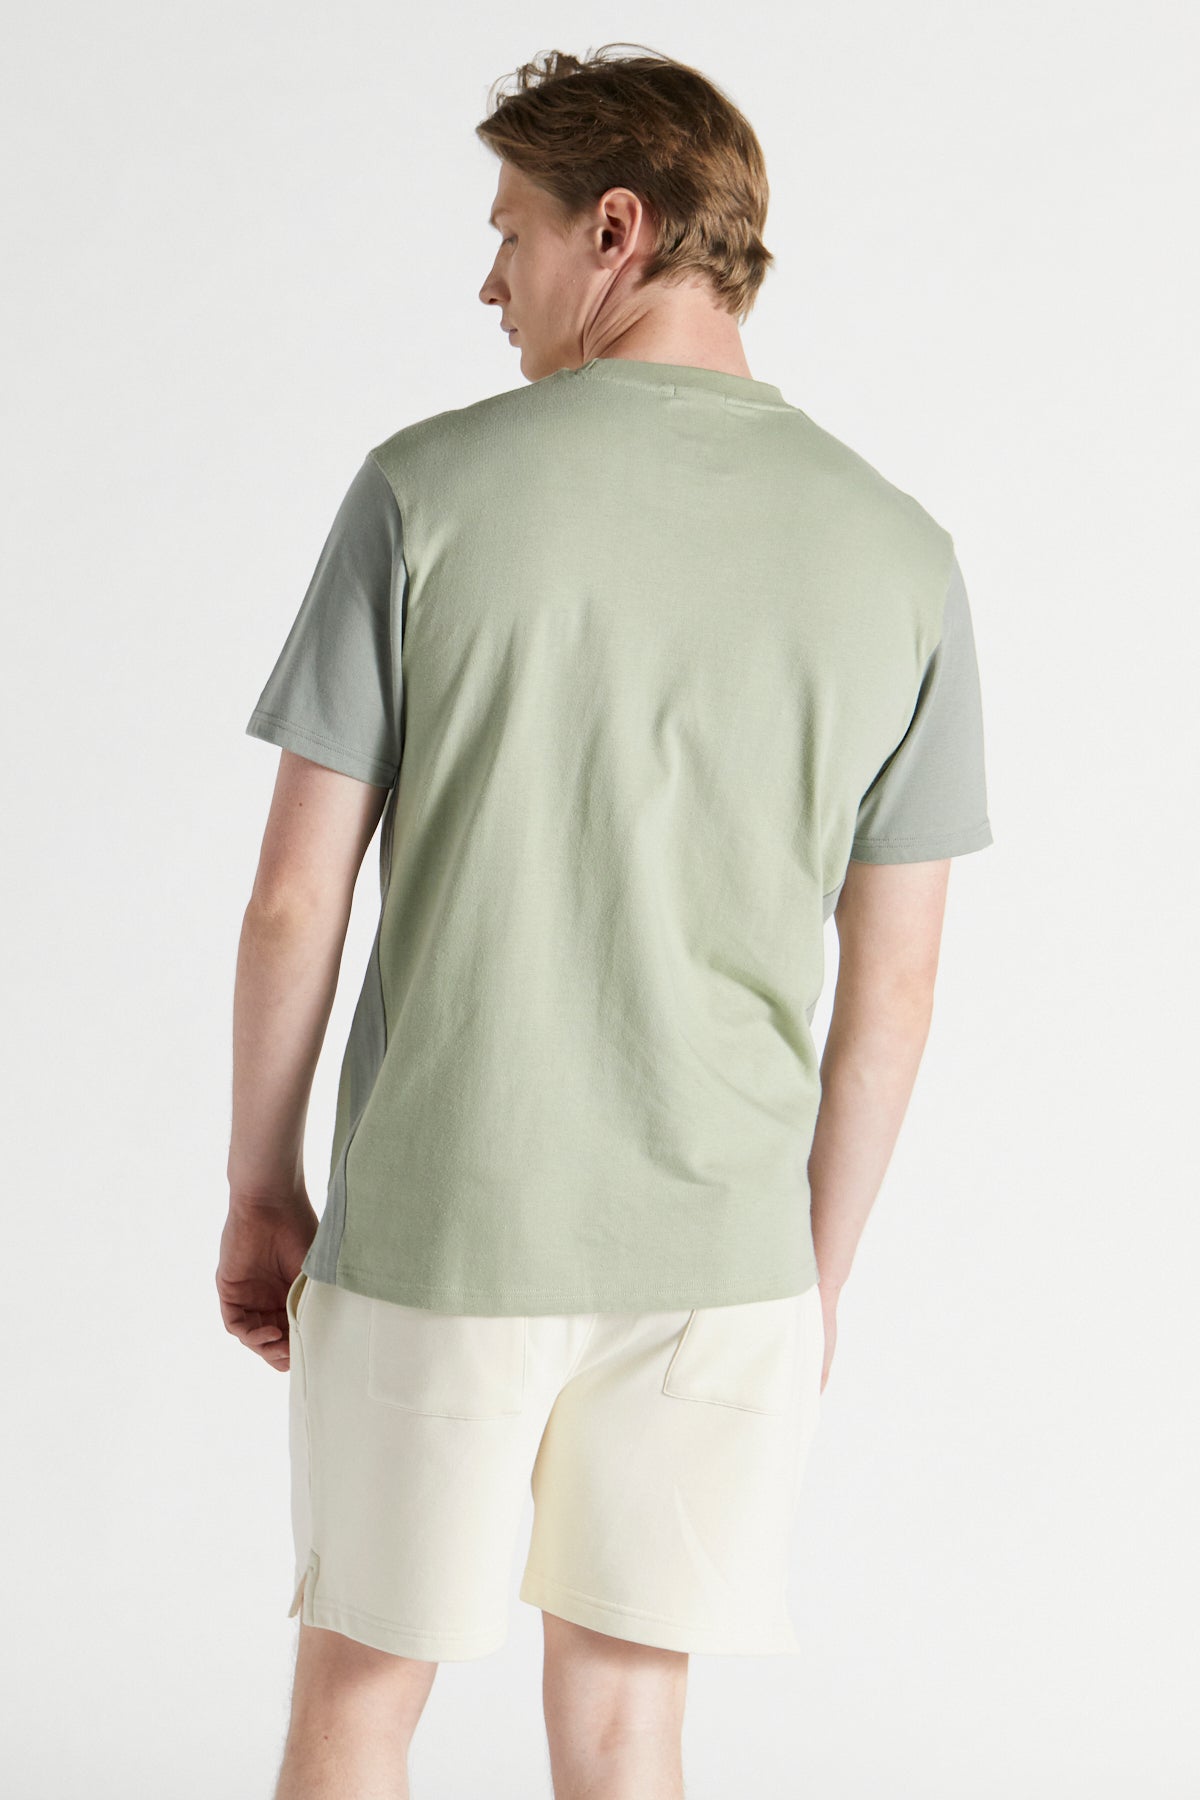 Colour Block T-shirt - Laurel Green